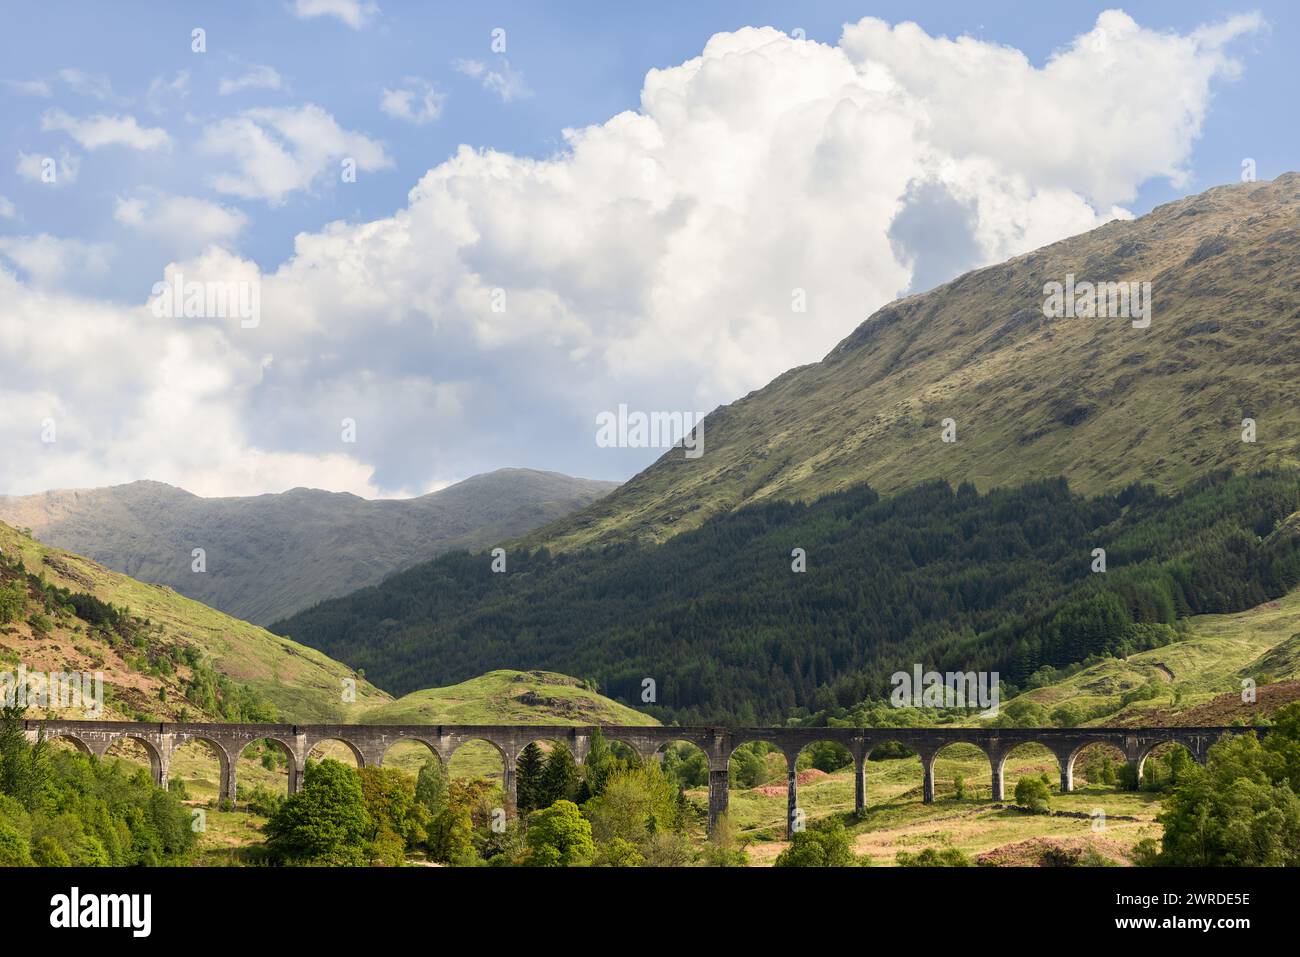 Il viadotto Glenfinnan si snoda attraverso le Highlands scozzesi, con i suoi archi che incorniciano la lussureggiante vegetazione, con terreno montuoso che si innalza sotto un dra Foto Stock